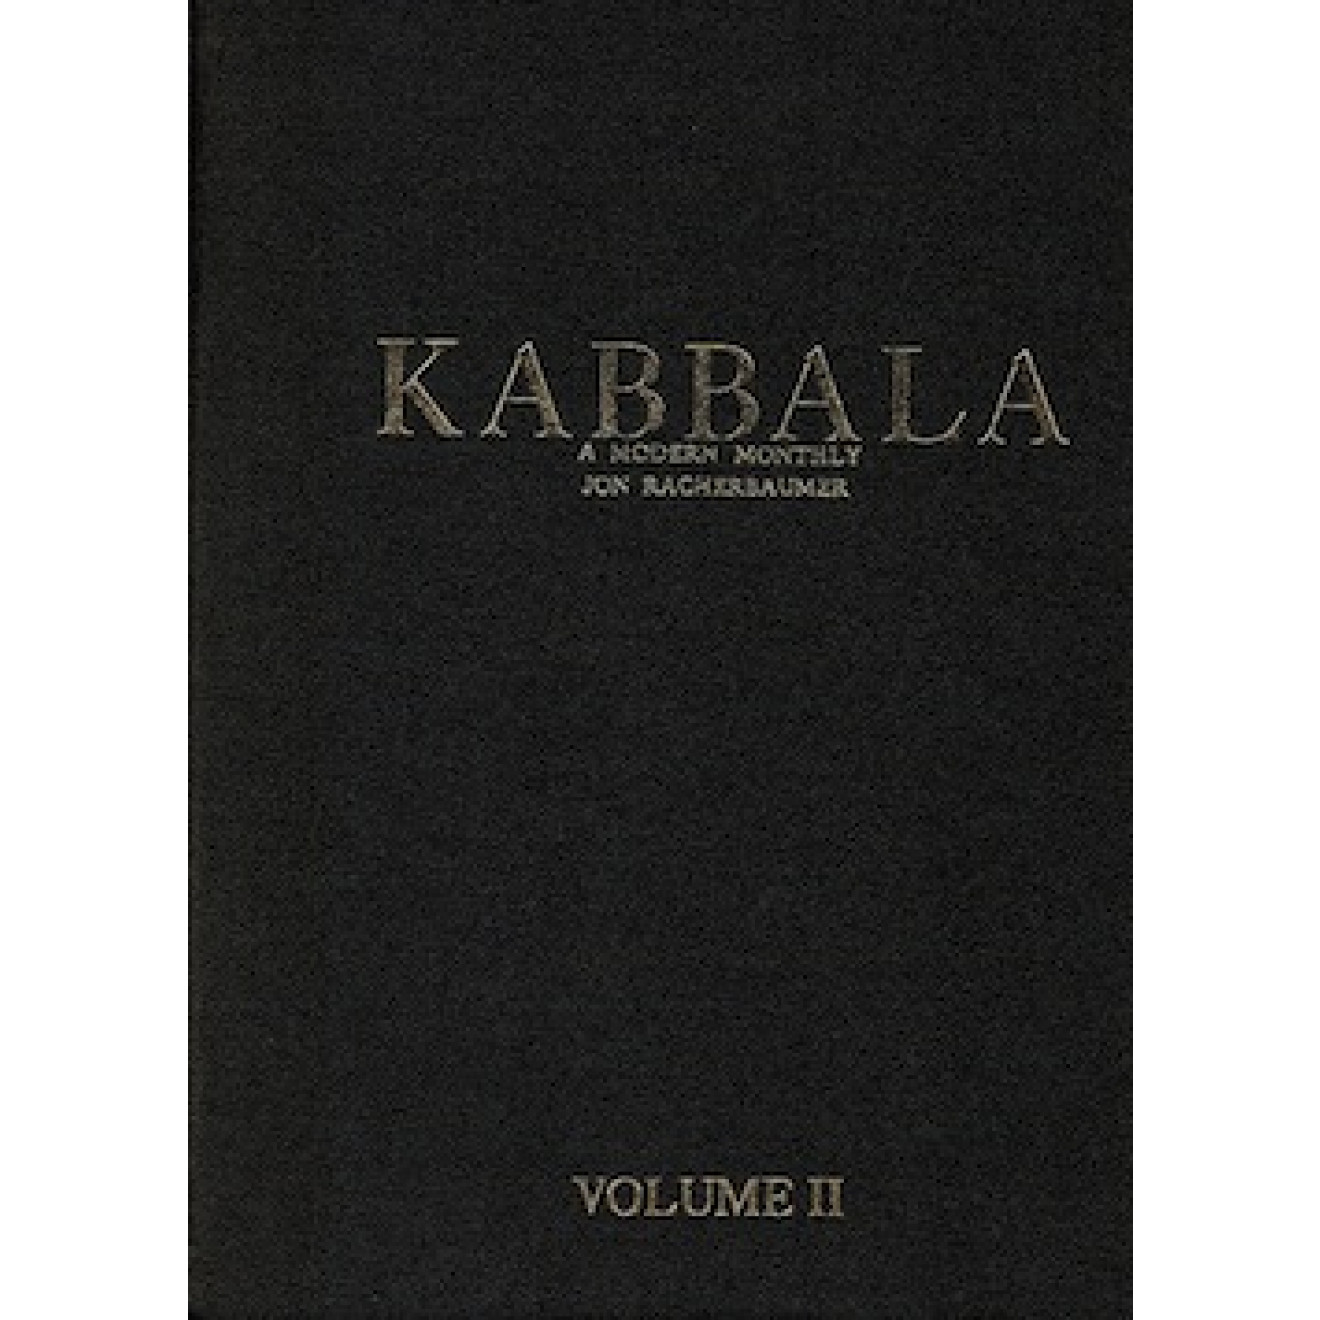 KABBALA - a Modern Monthly Vol.II